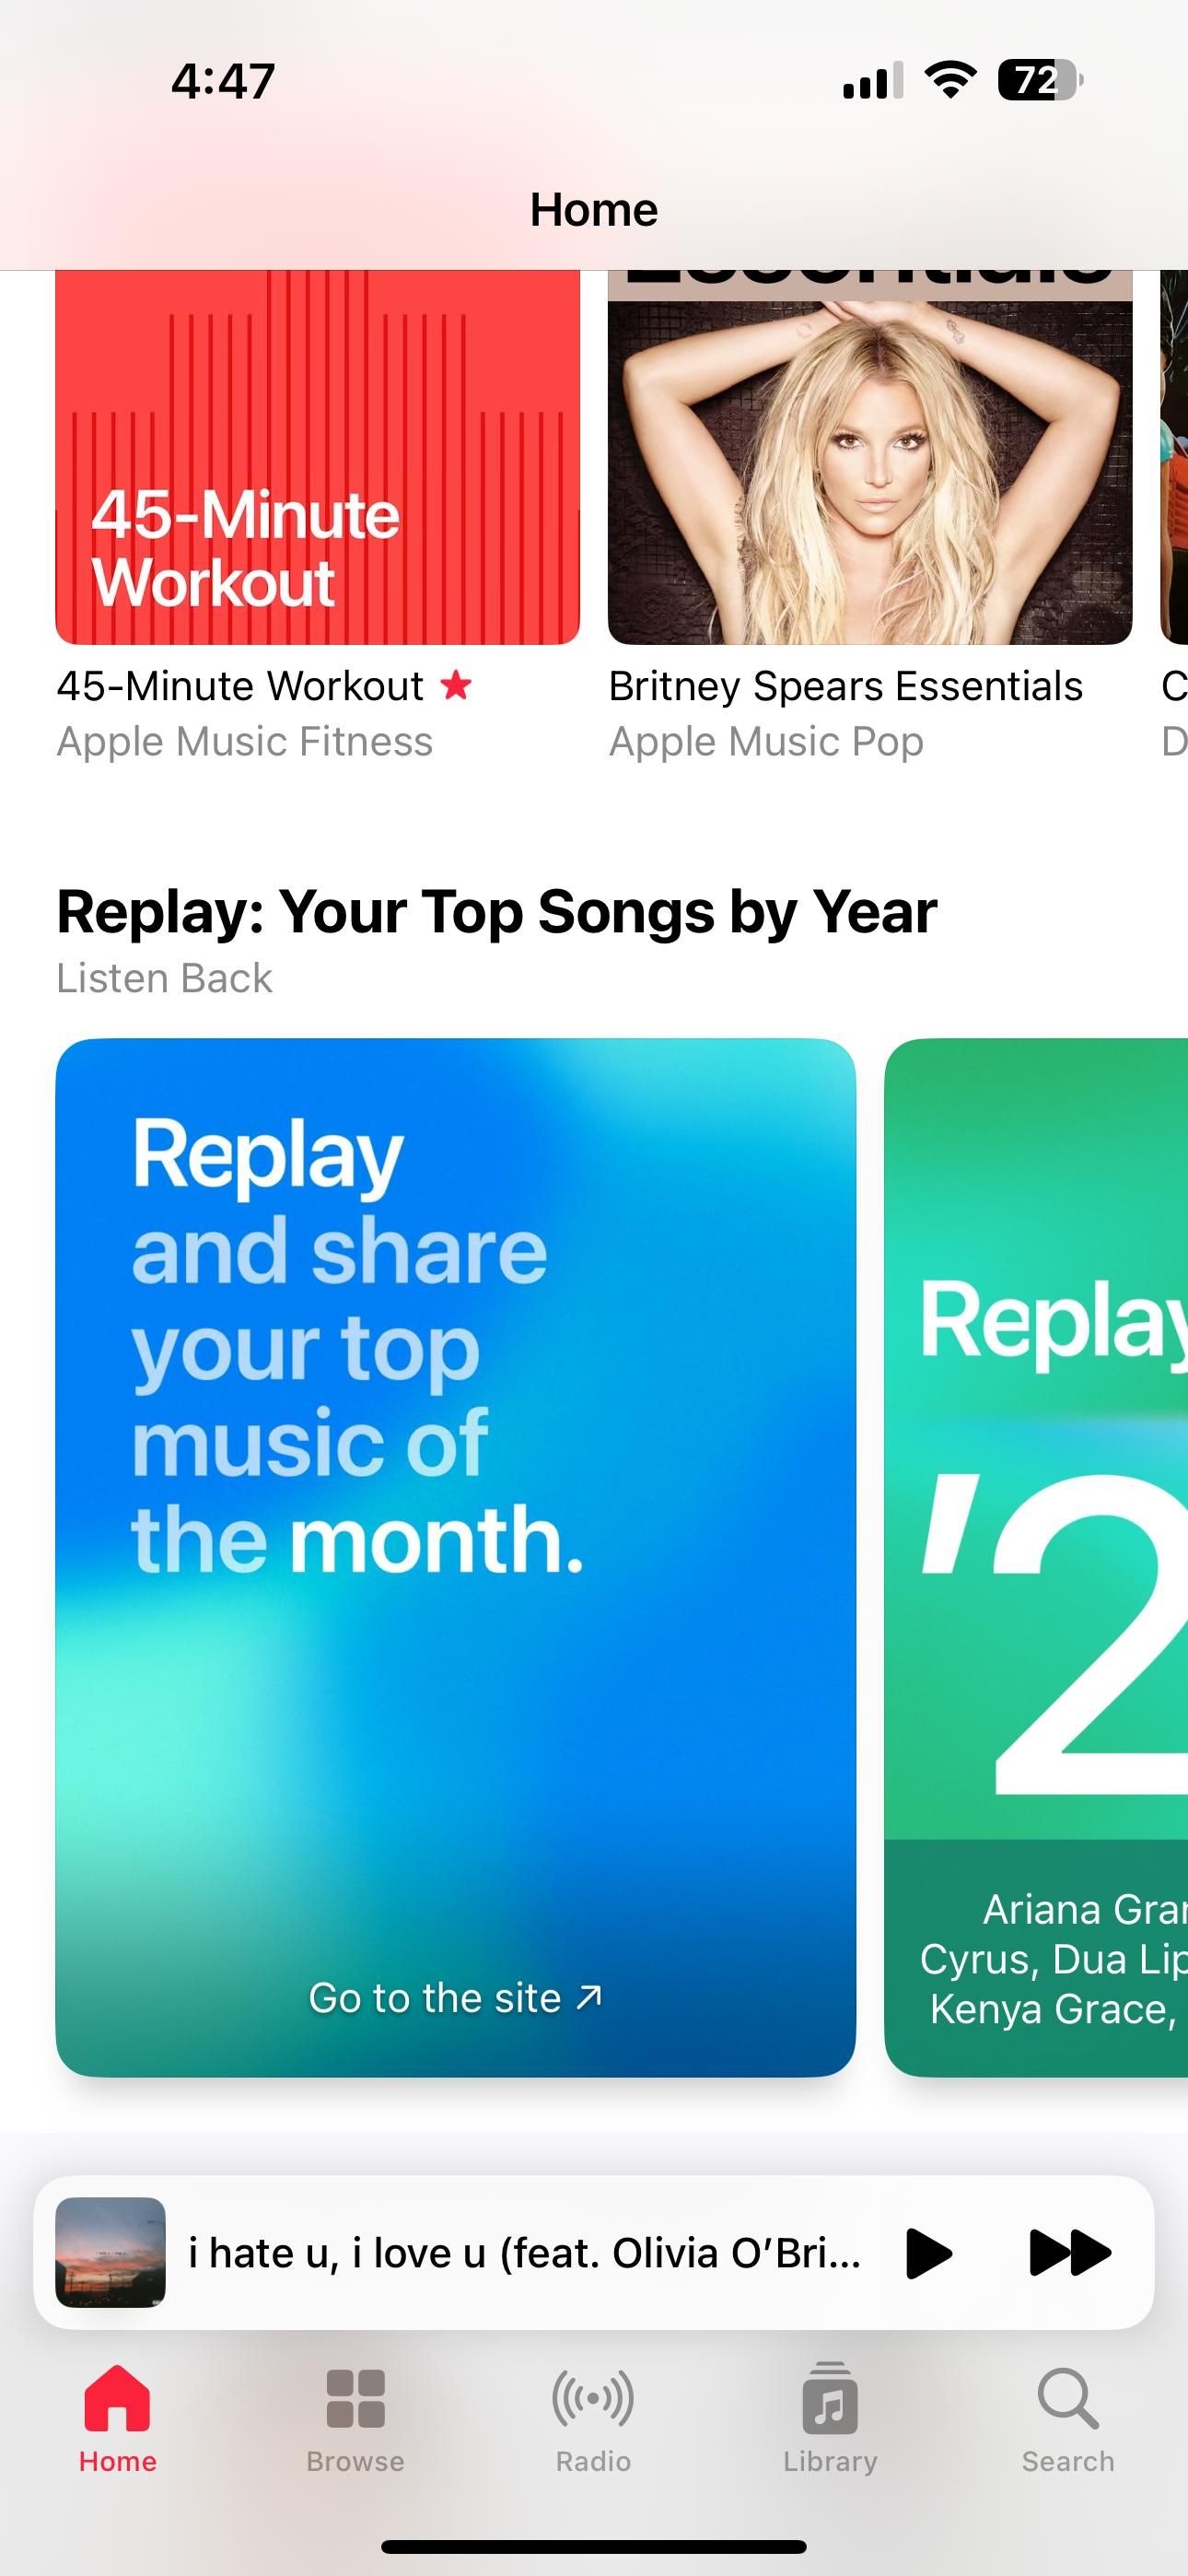 Captura de tela do Apple Music Replay no aplicativo Apple Music iOS